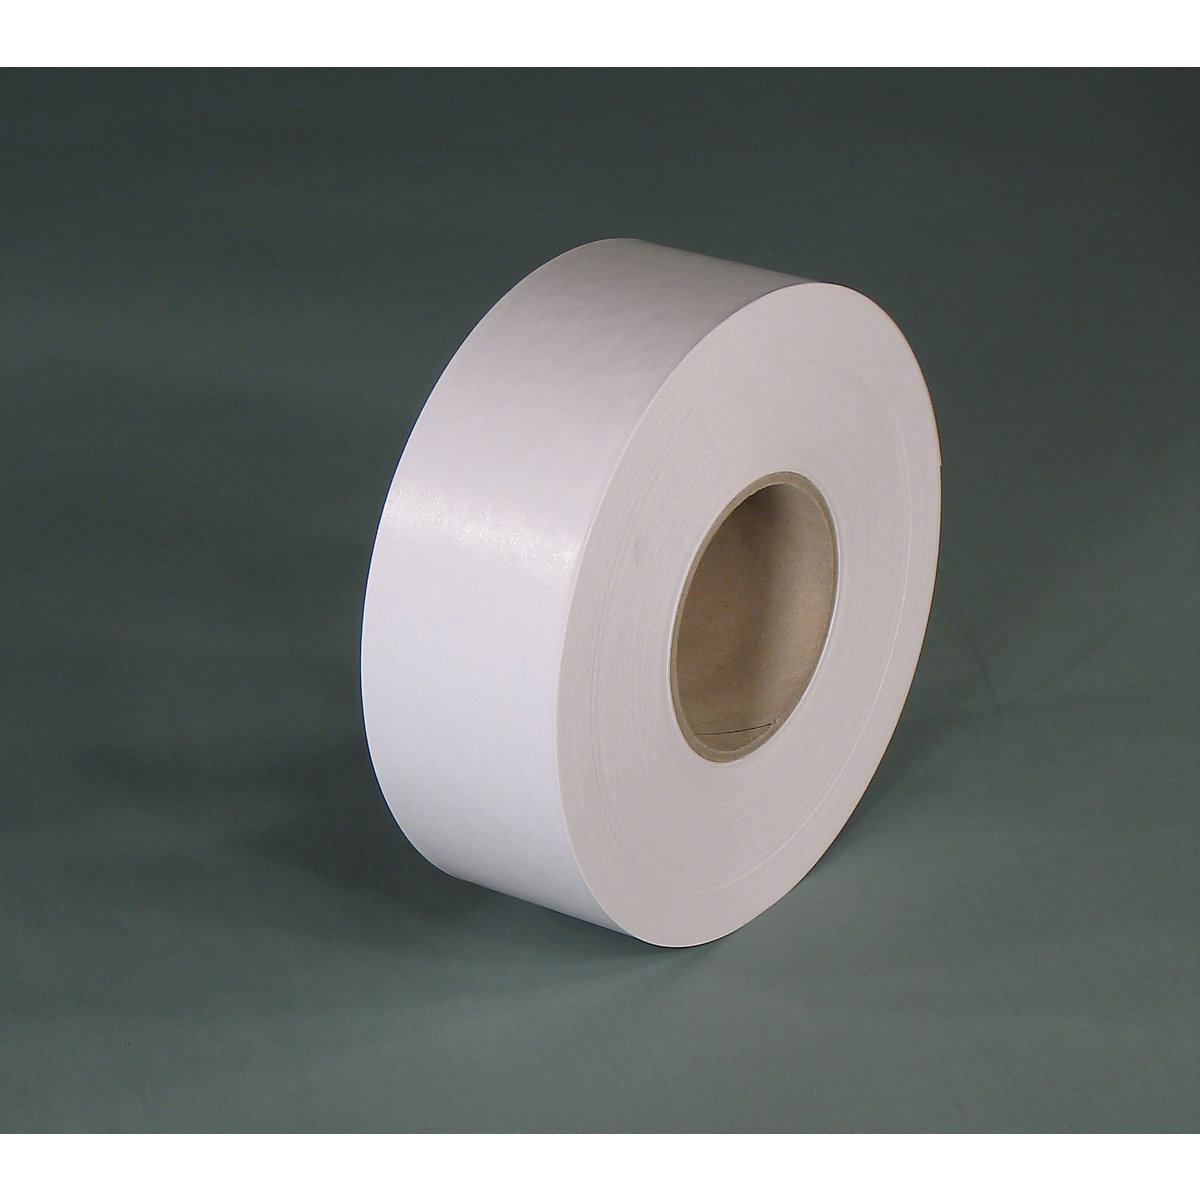 Gummed tape – eurokraft basic, basic model, pack of 12 rolls, white, tape width 60 mm-2